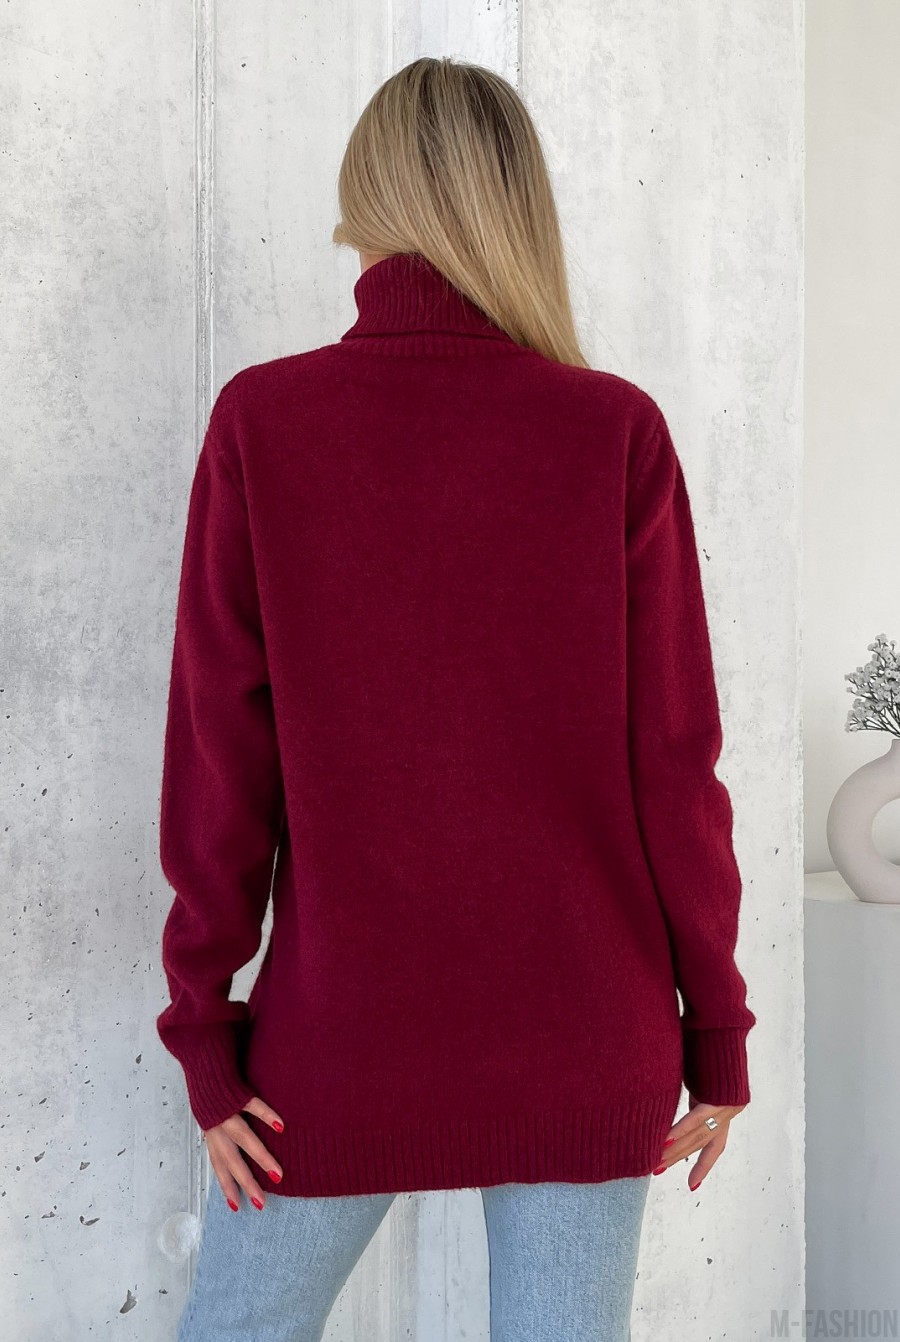 Бордовый свитер объемной вязки с высоким горлом - Фото 3